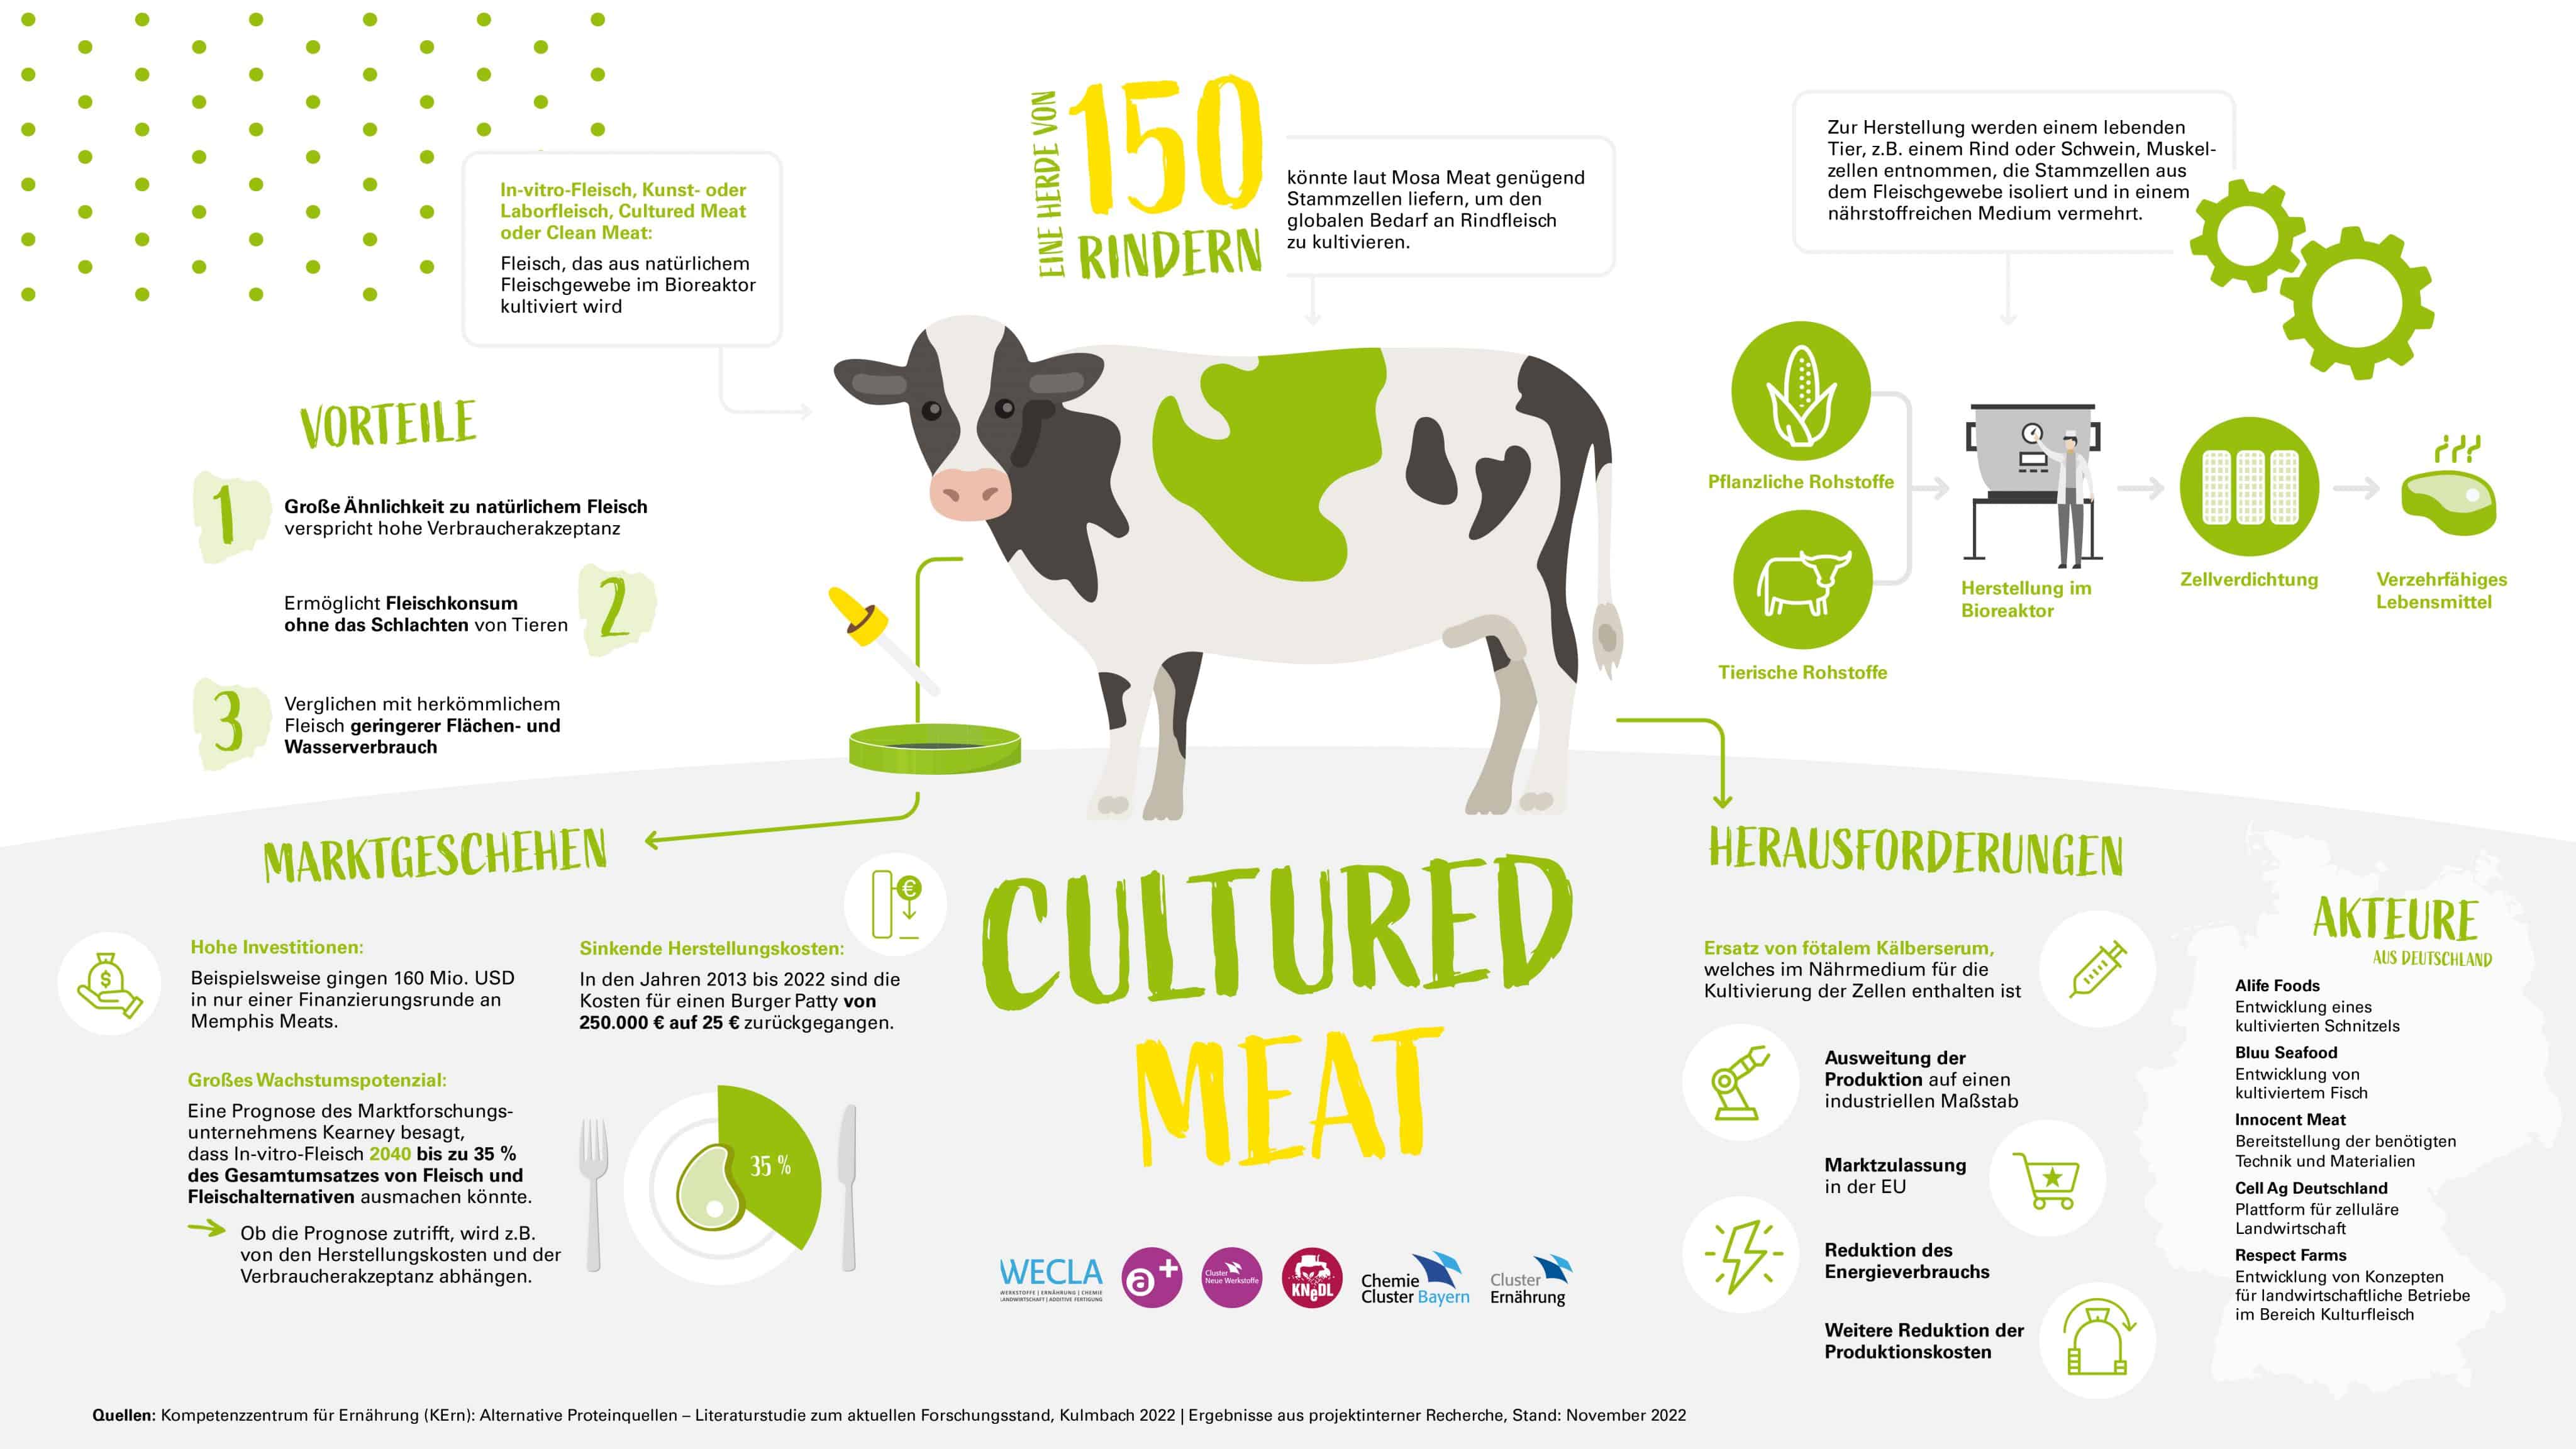 Die Infografik verdeutlicht Vorteile von Cultured Meat sowie Herausforderungen und nennt relevante Akteure aus Deutschland.